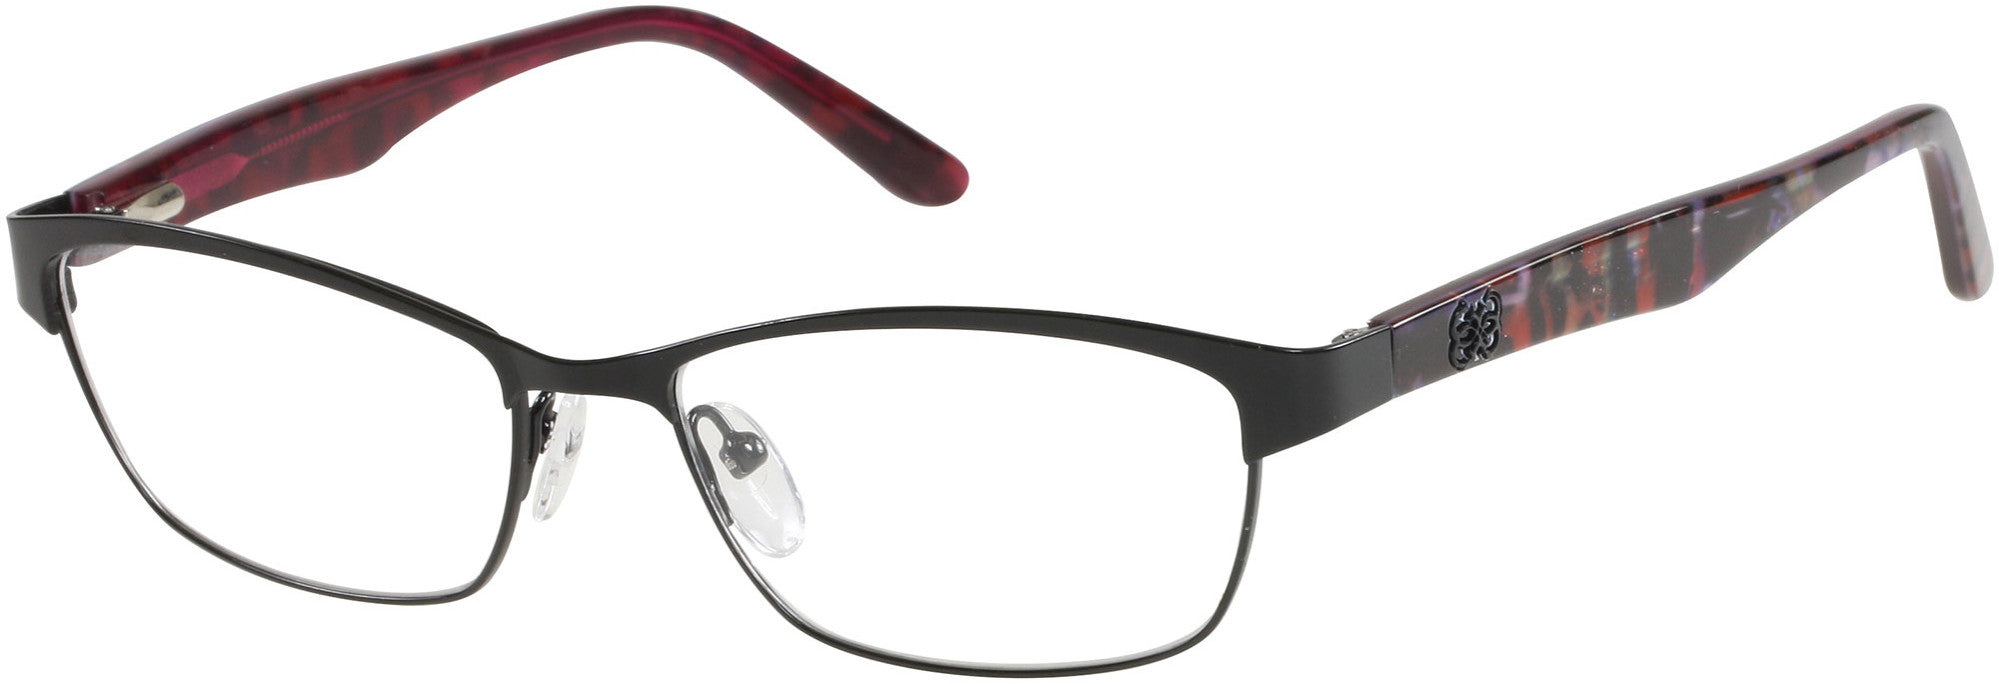 Guess GU2420 Eyeglasses B84-B84 - Black